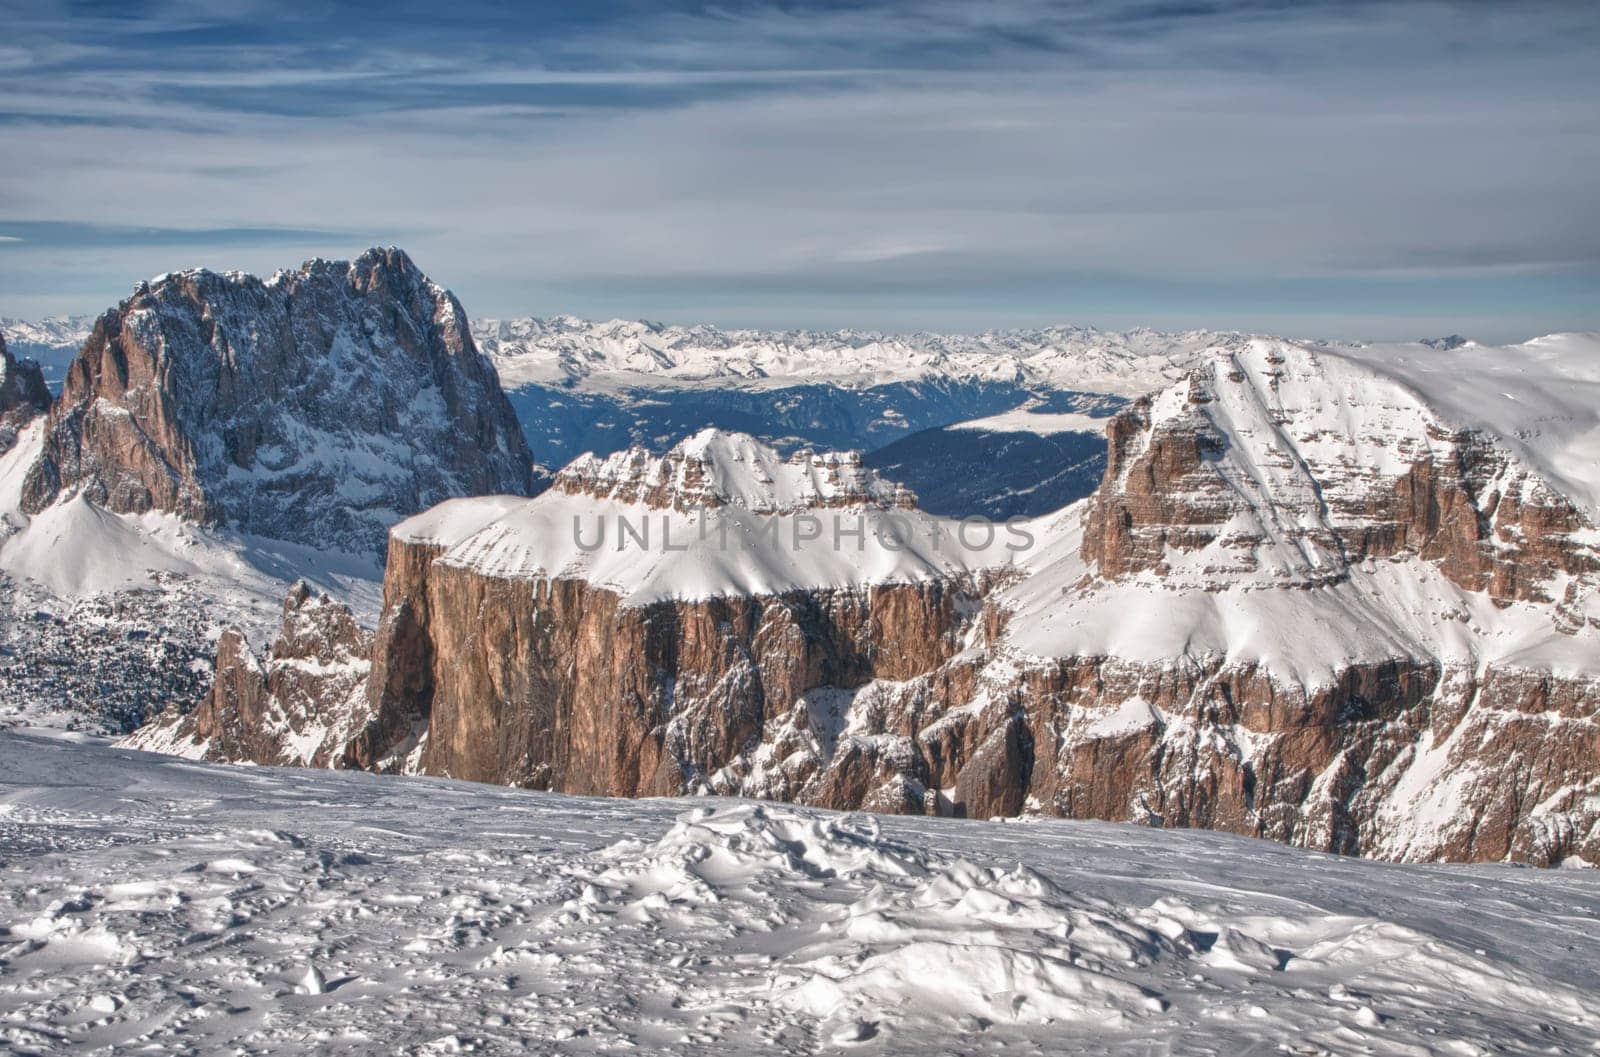 Pordoi mountains on winter time by AndreaIzzotti